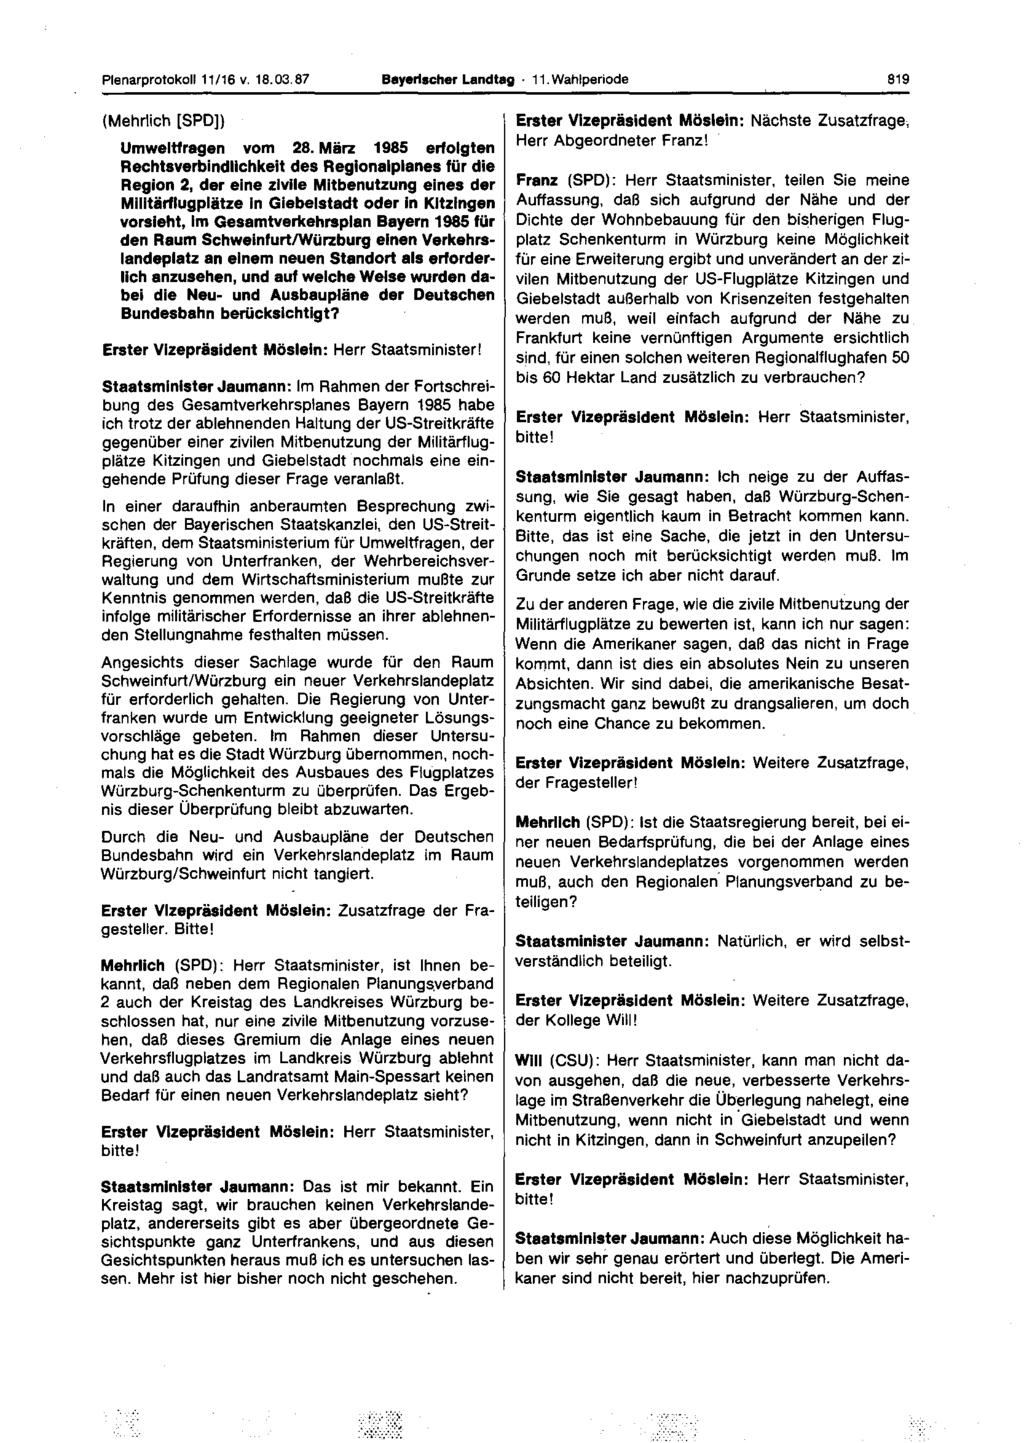 Plenarprotokoll 11/16 v. 18.03.87 Bayerischer Landtag 11. Wahlperiode 819 (Mehrlich [SPD]) Umwelttragen vom 28.